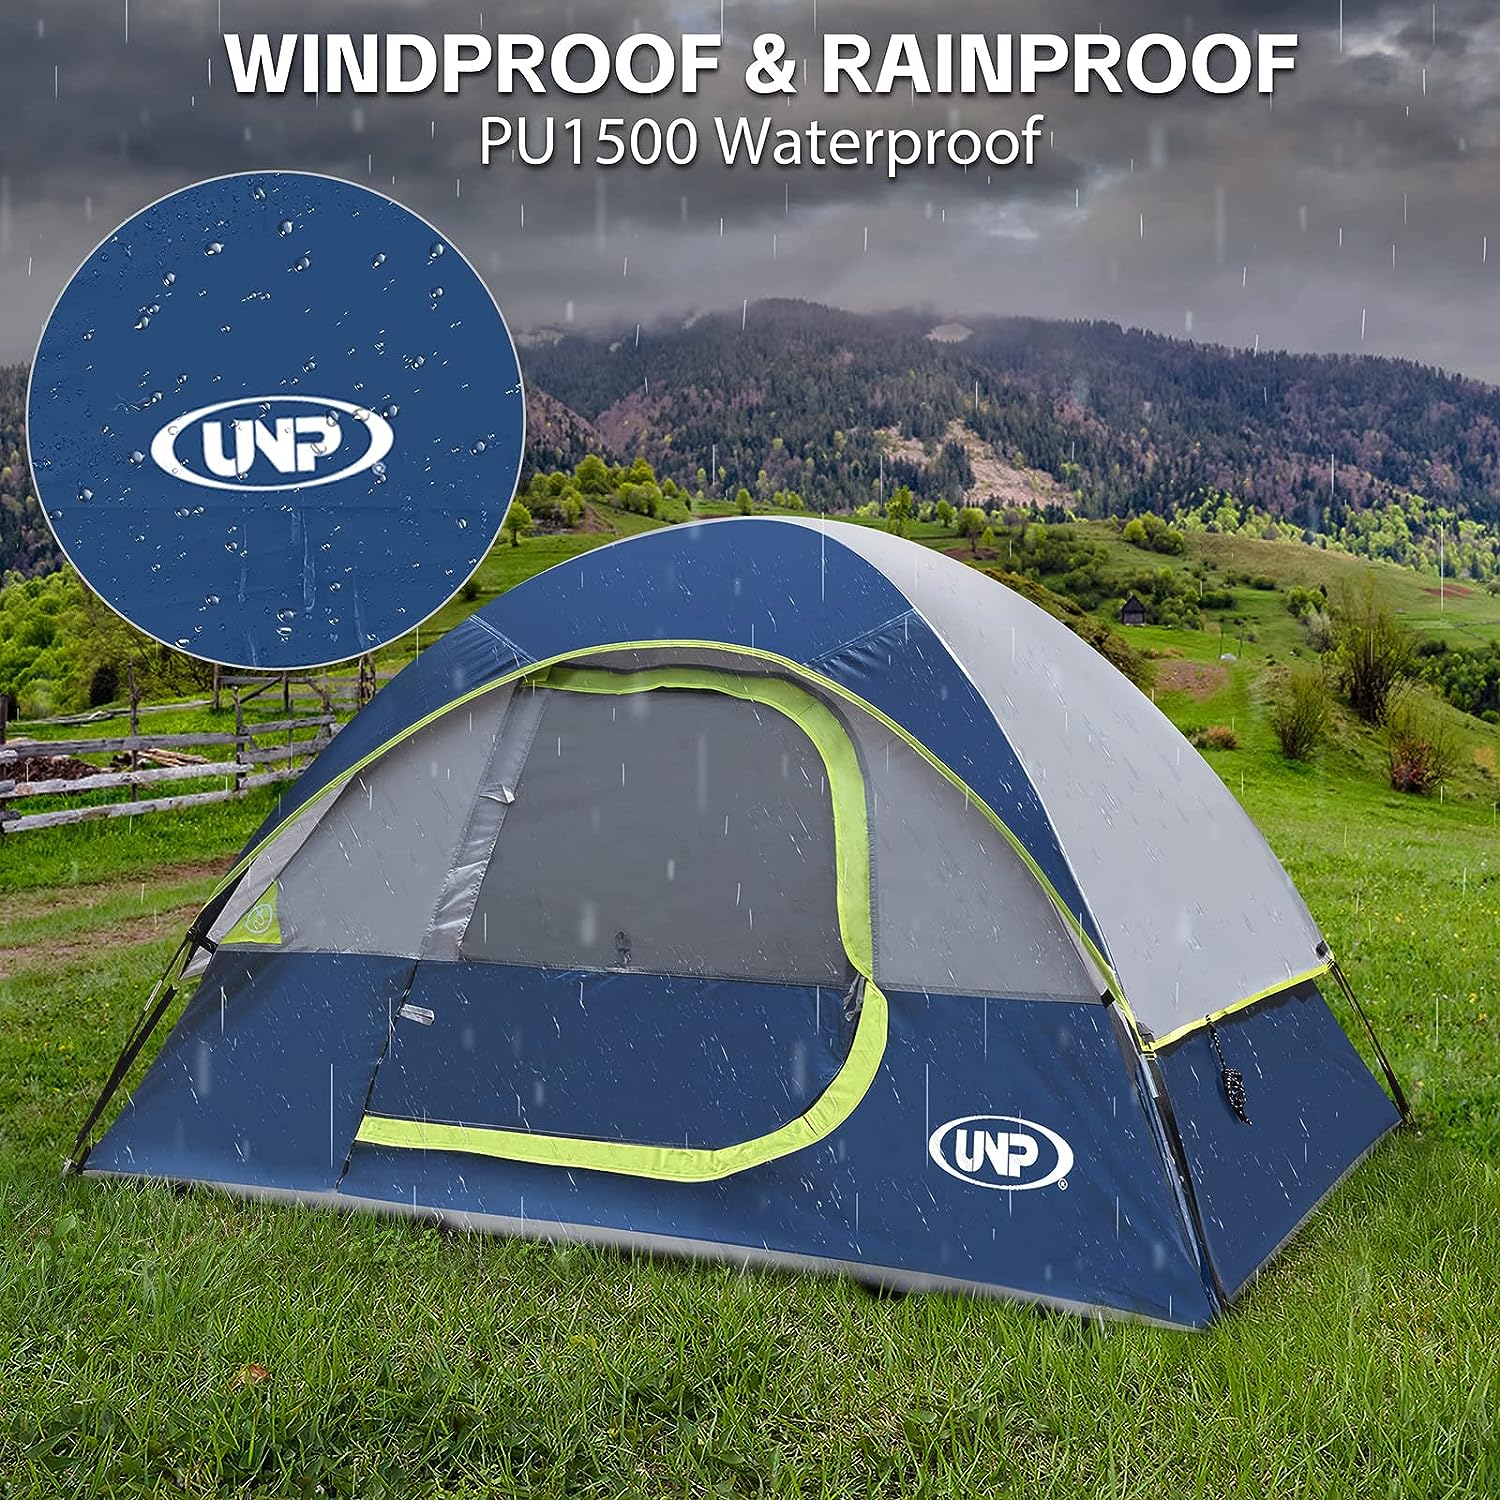 Unp Dome Tent Waterproof